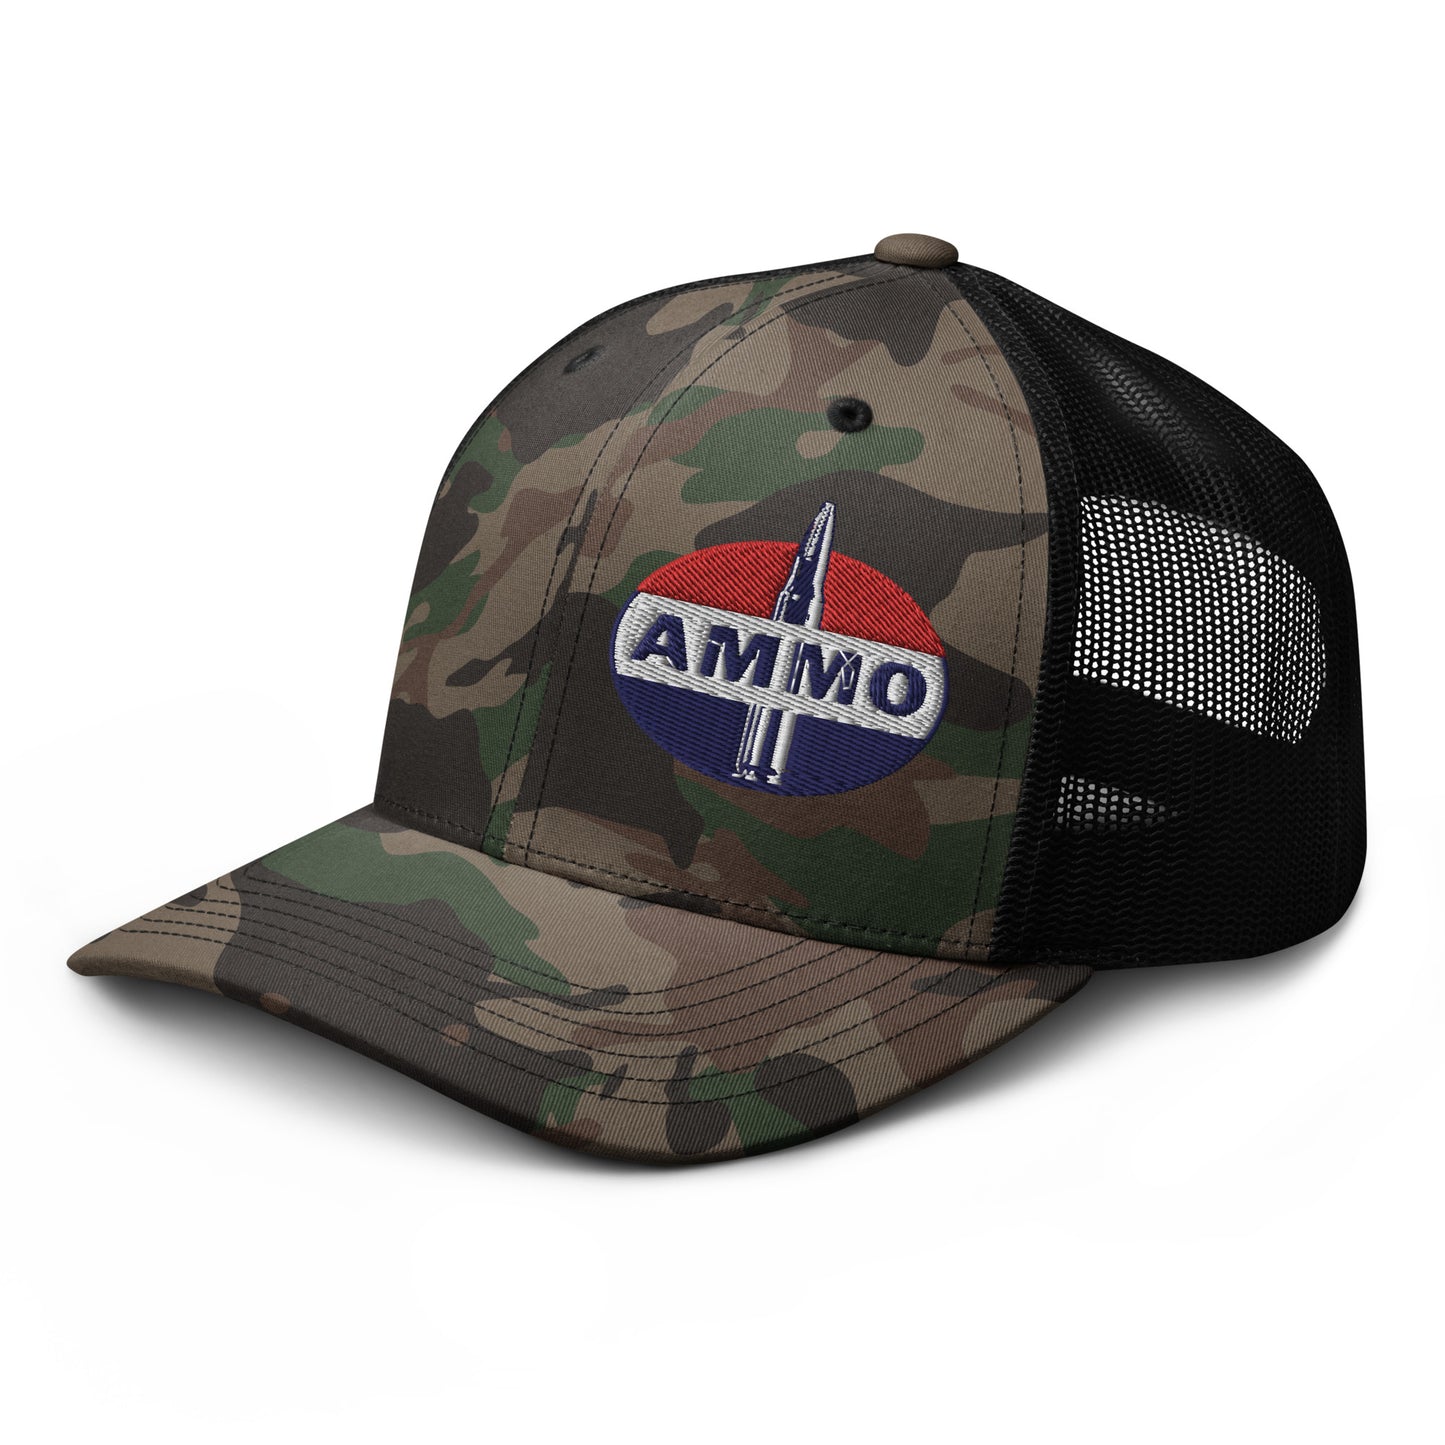 AMMO- Fuel Parody Camouflage trucker hat